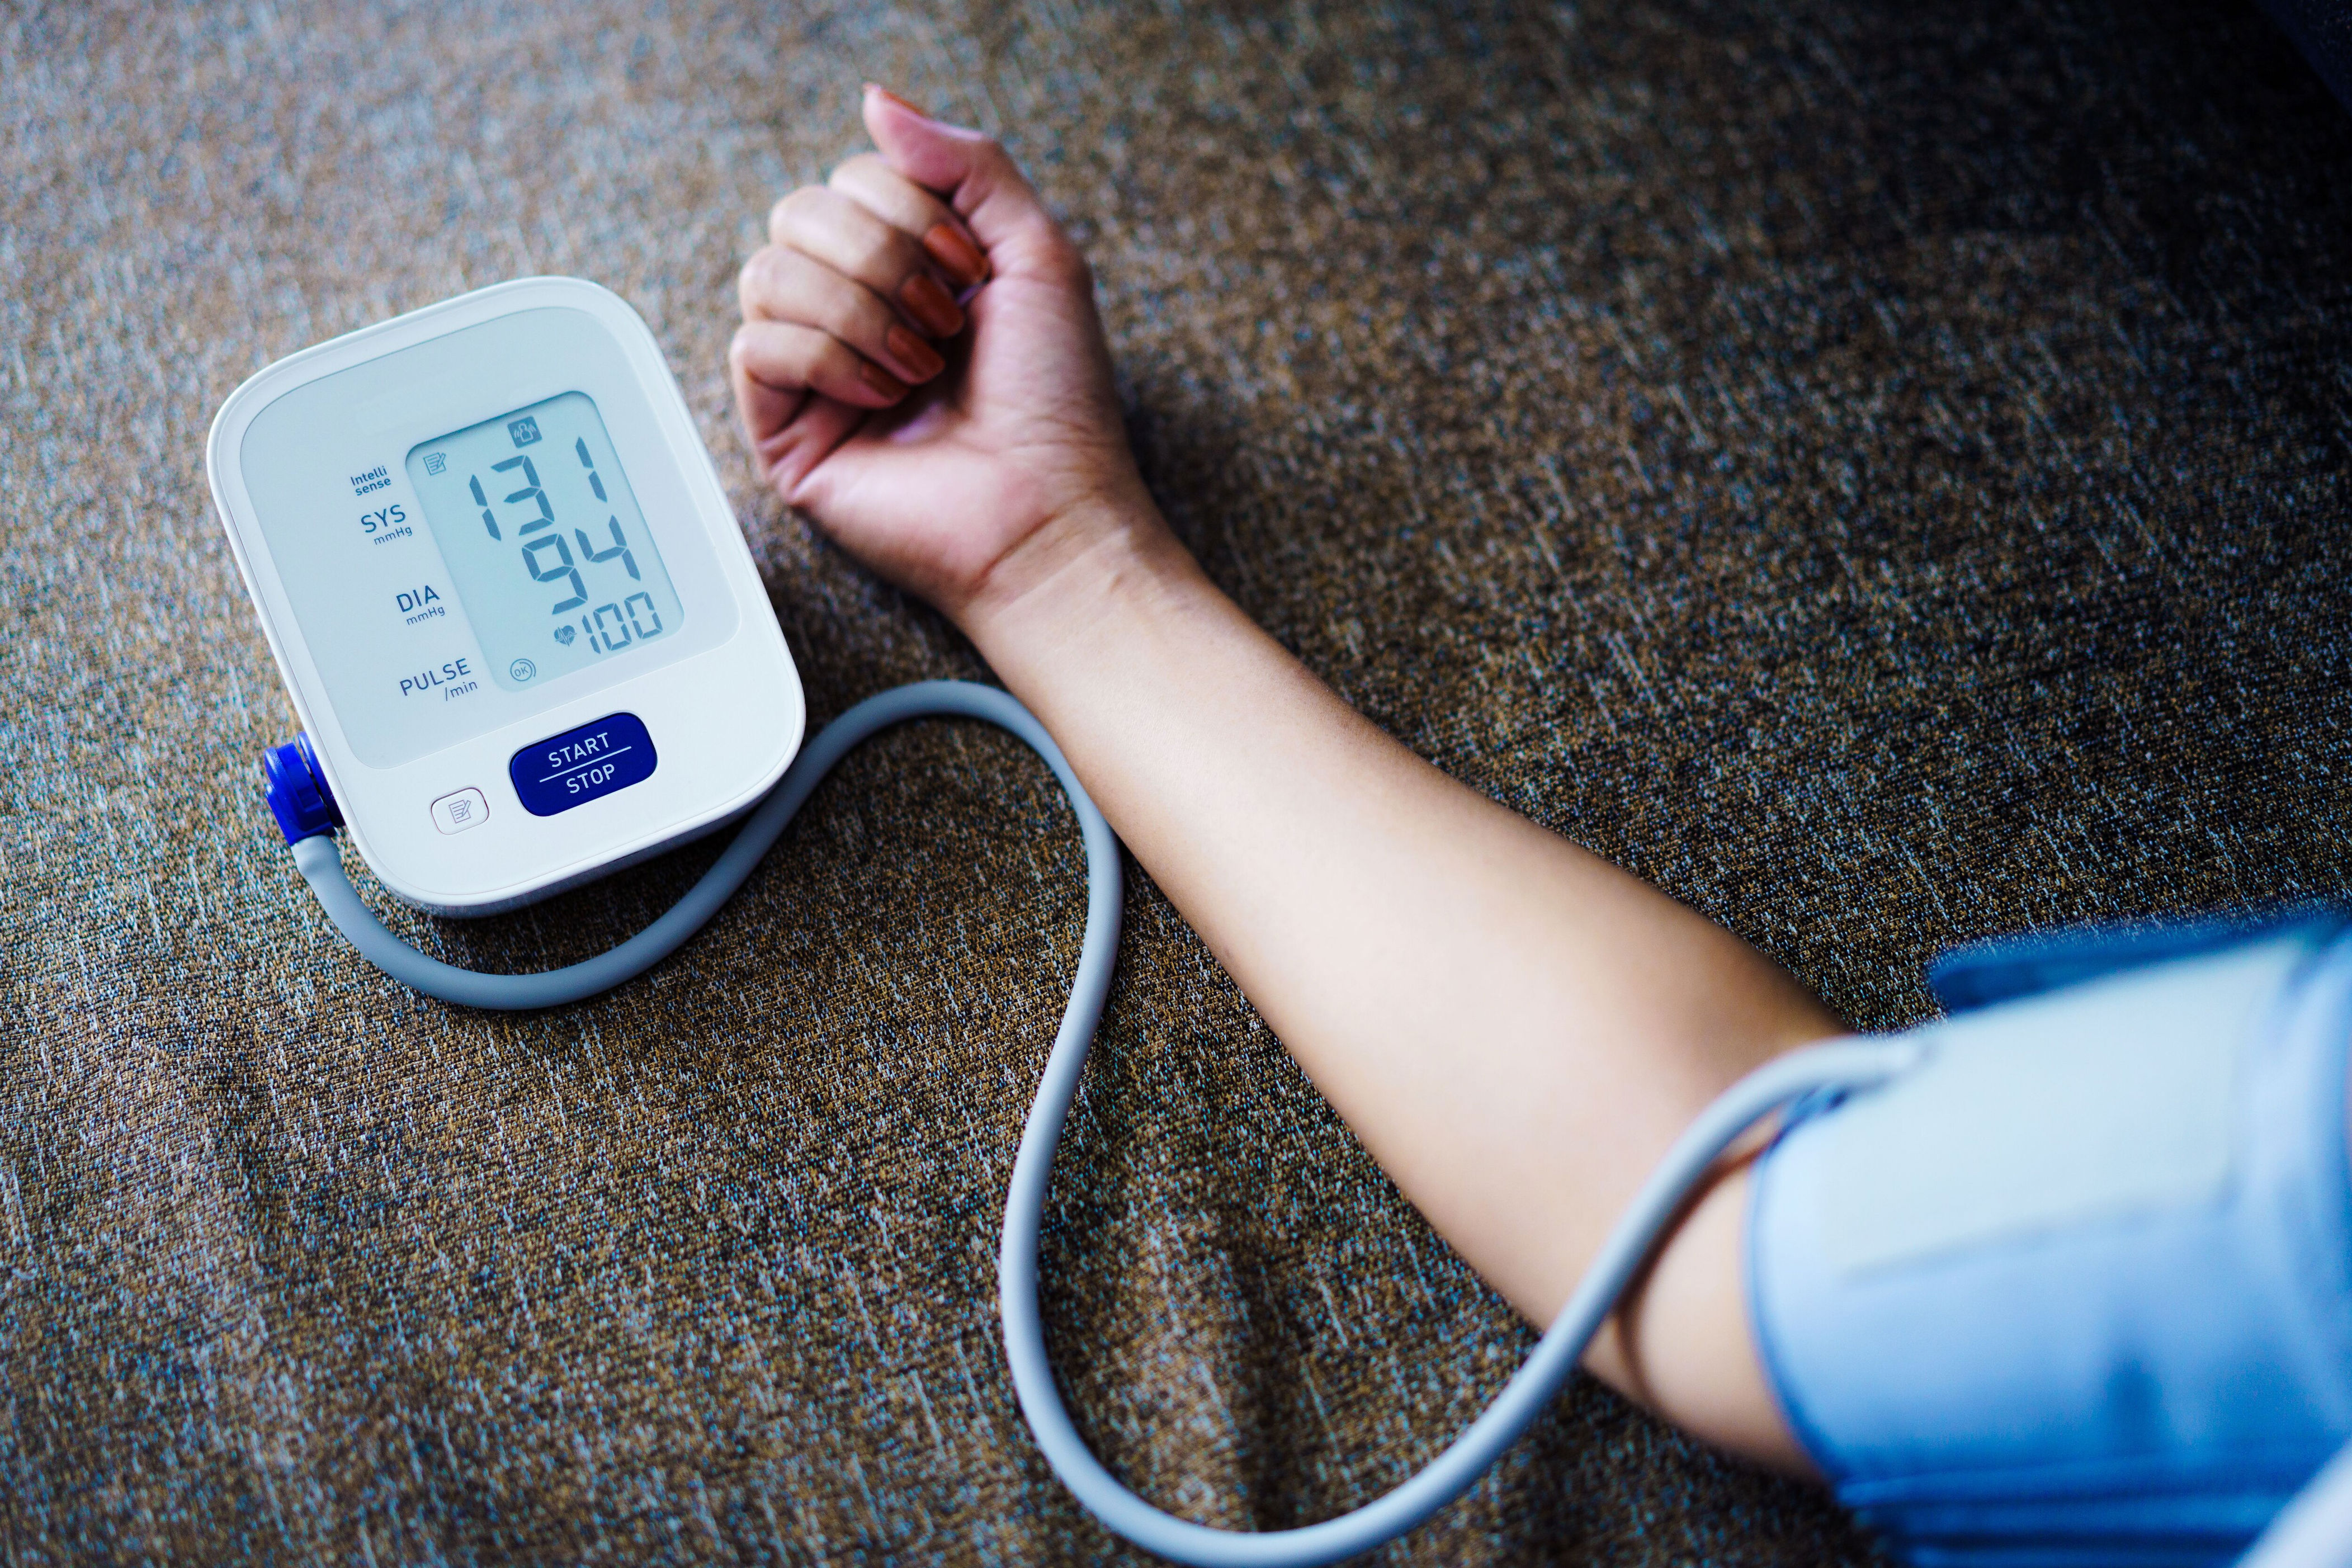 presión arterial alta: la planta medicinal con efecto diurético que ayudaría a bajarla